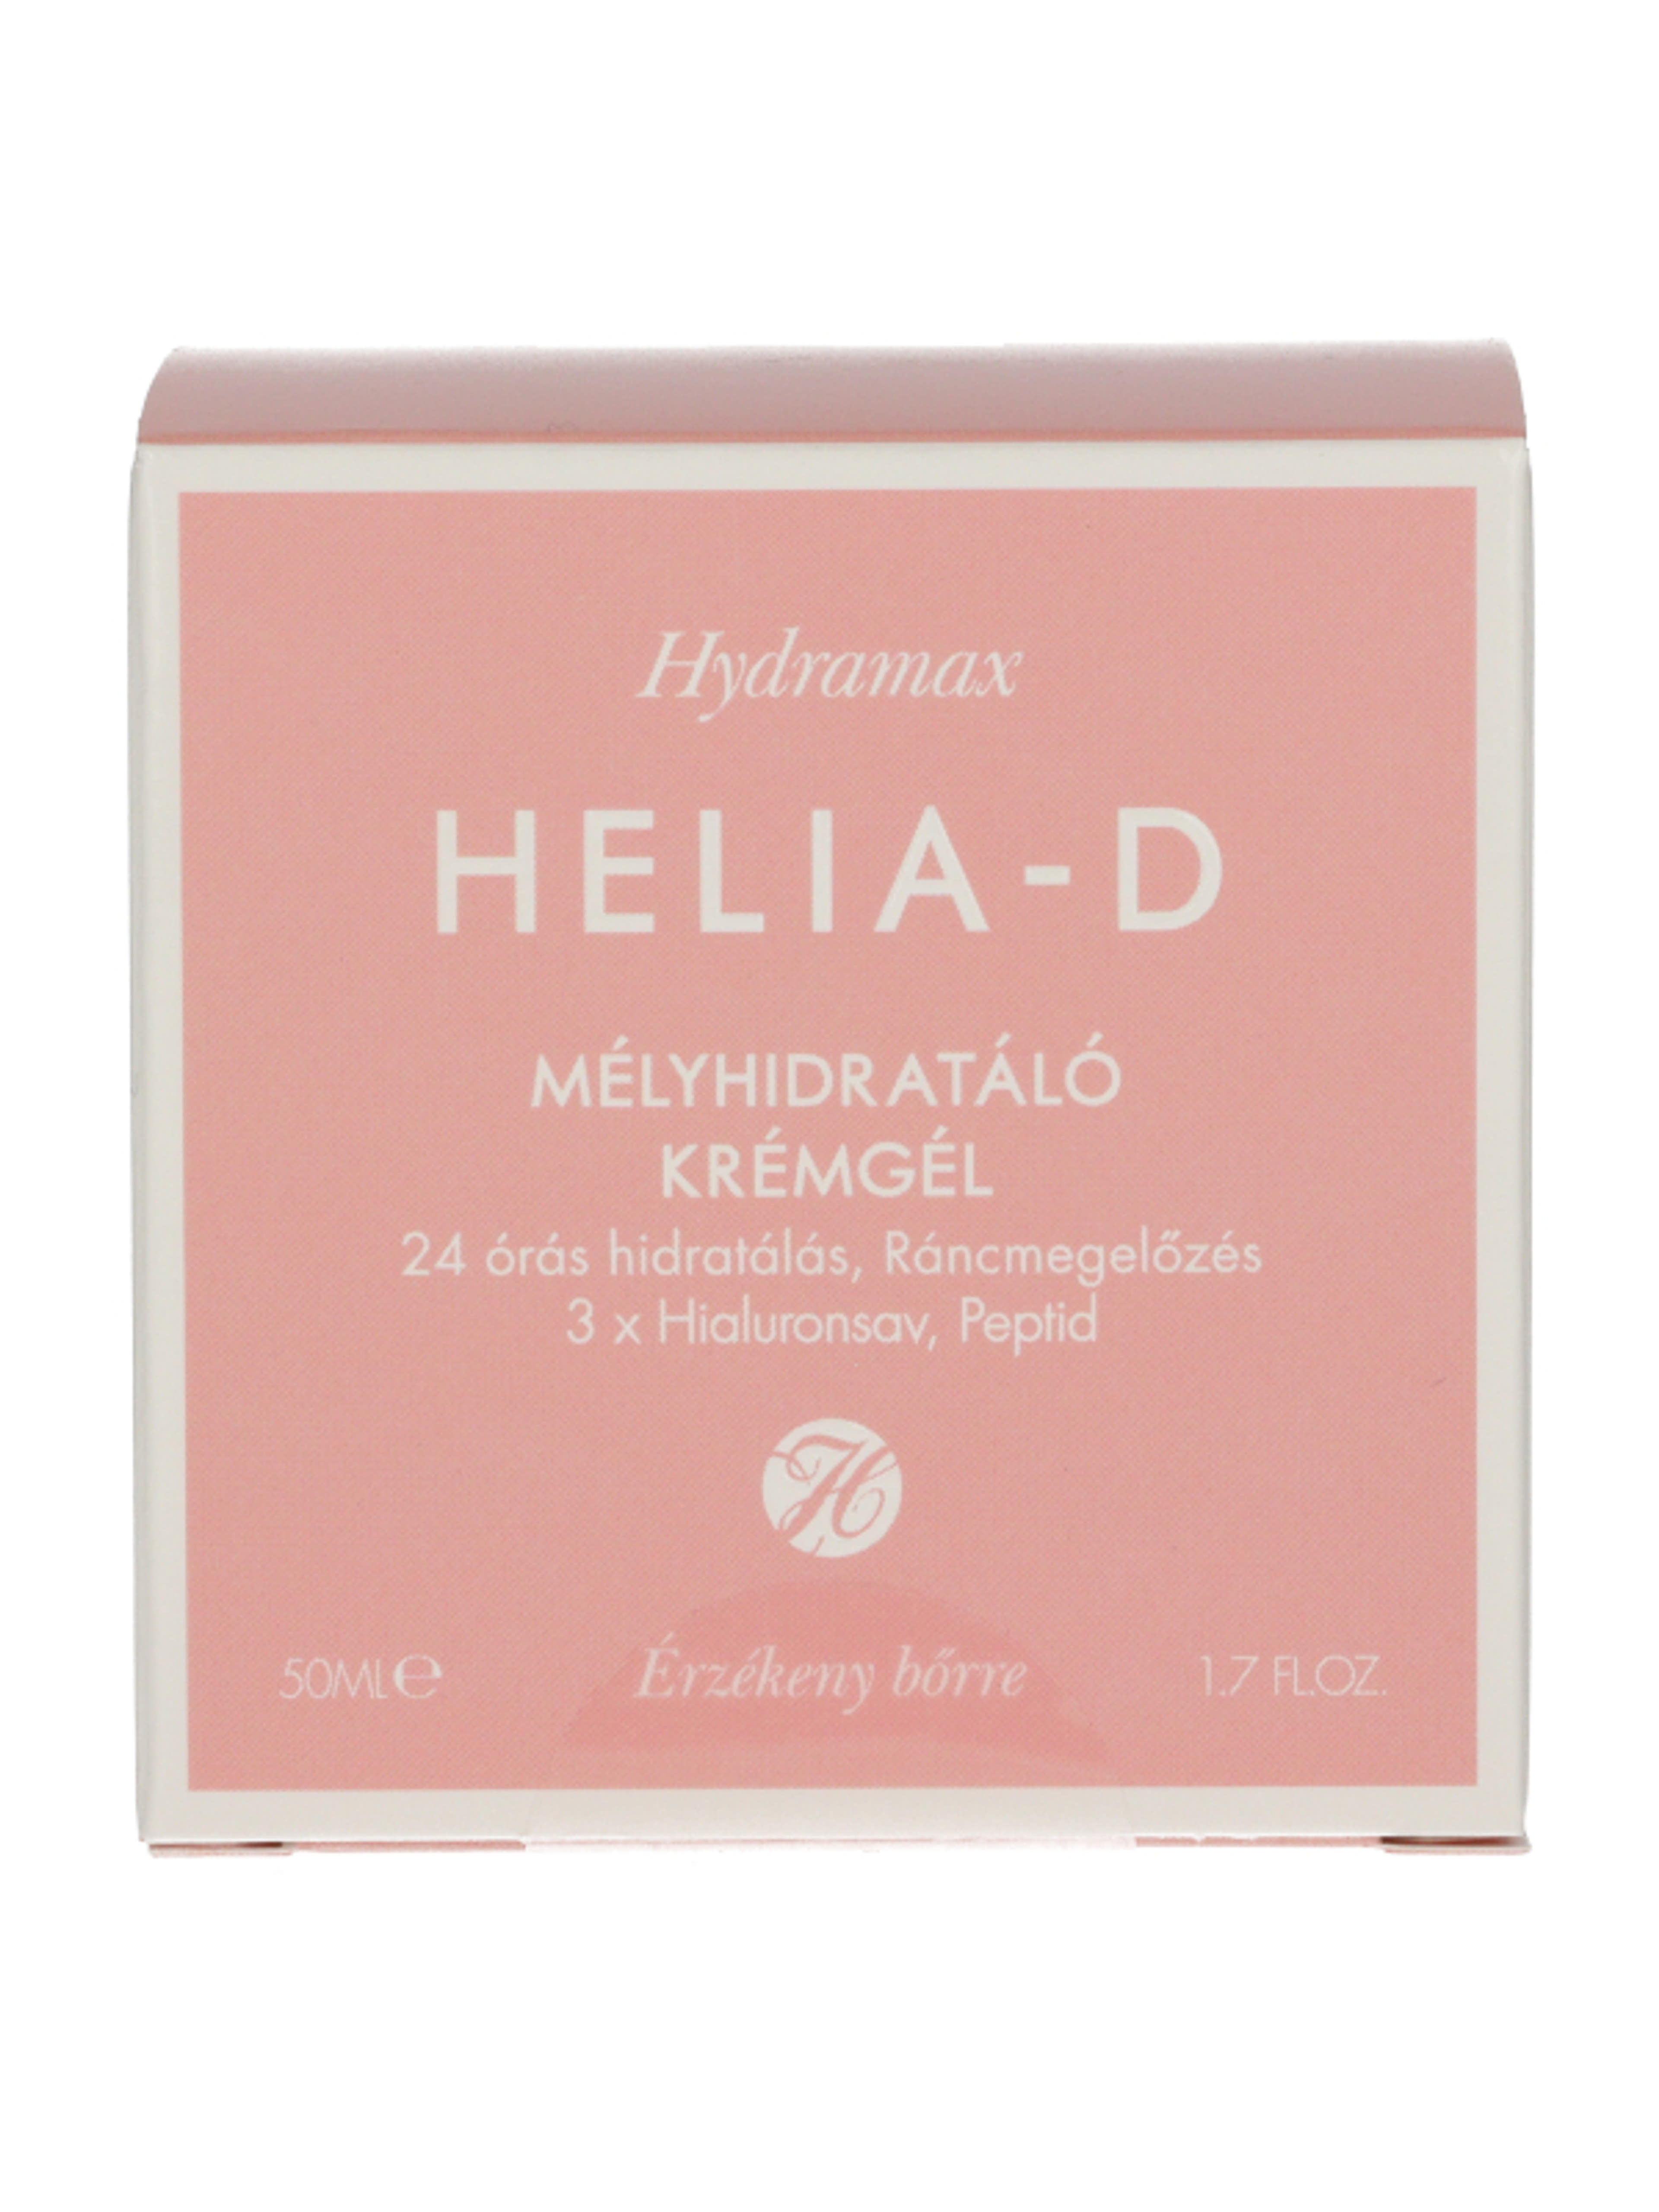 Helia-D Hydramax mélyhidratáló krémgél érzékeny bőrre - 50 ml